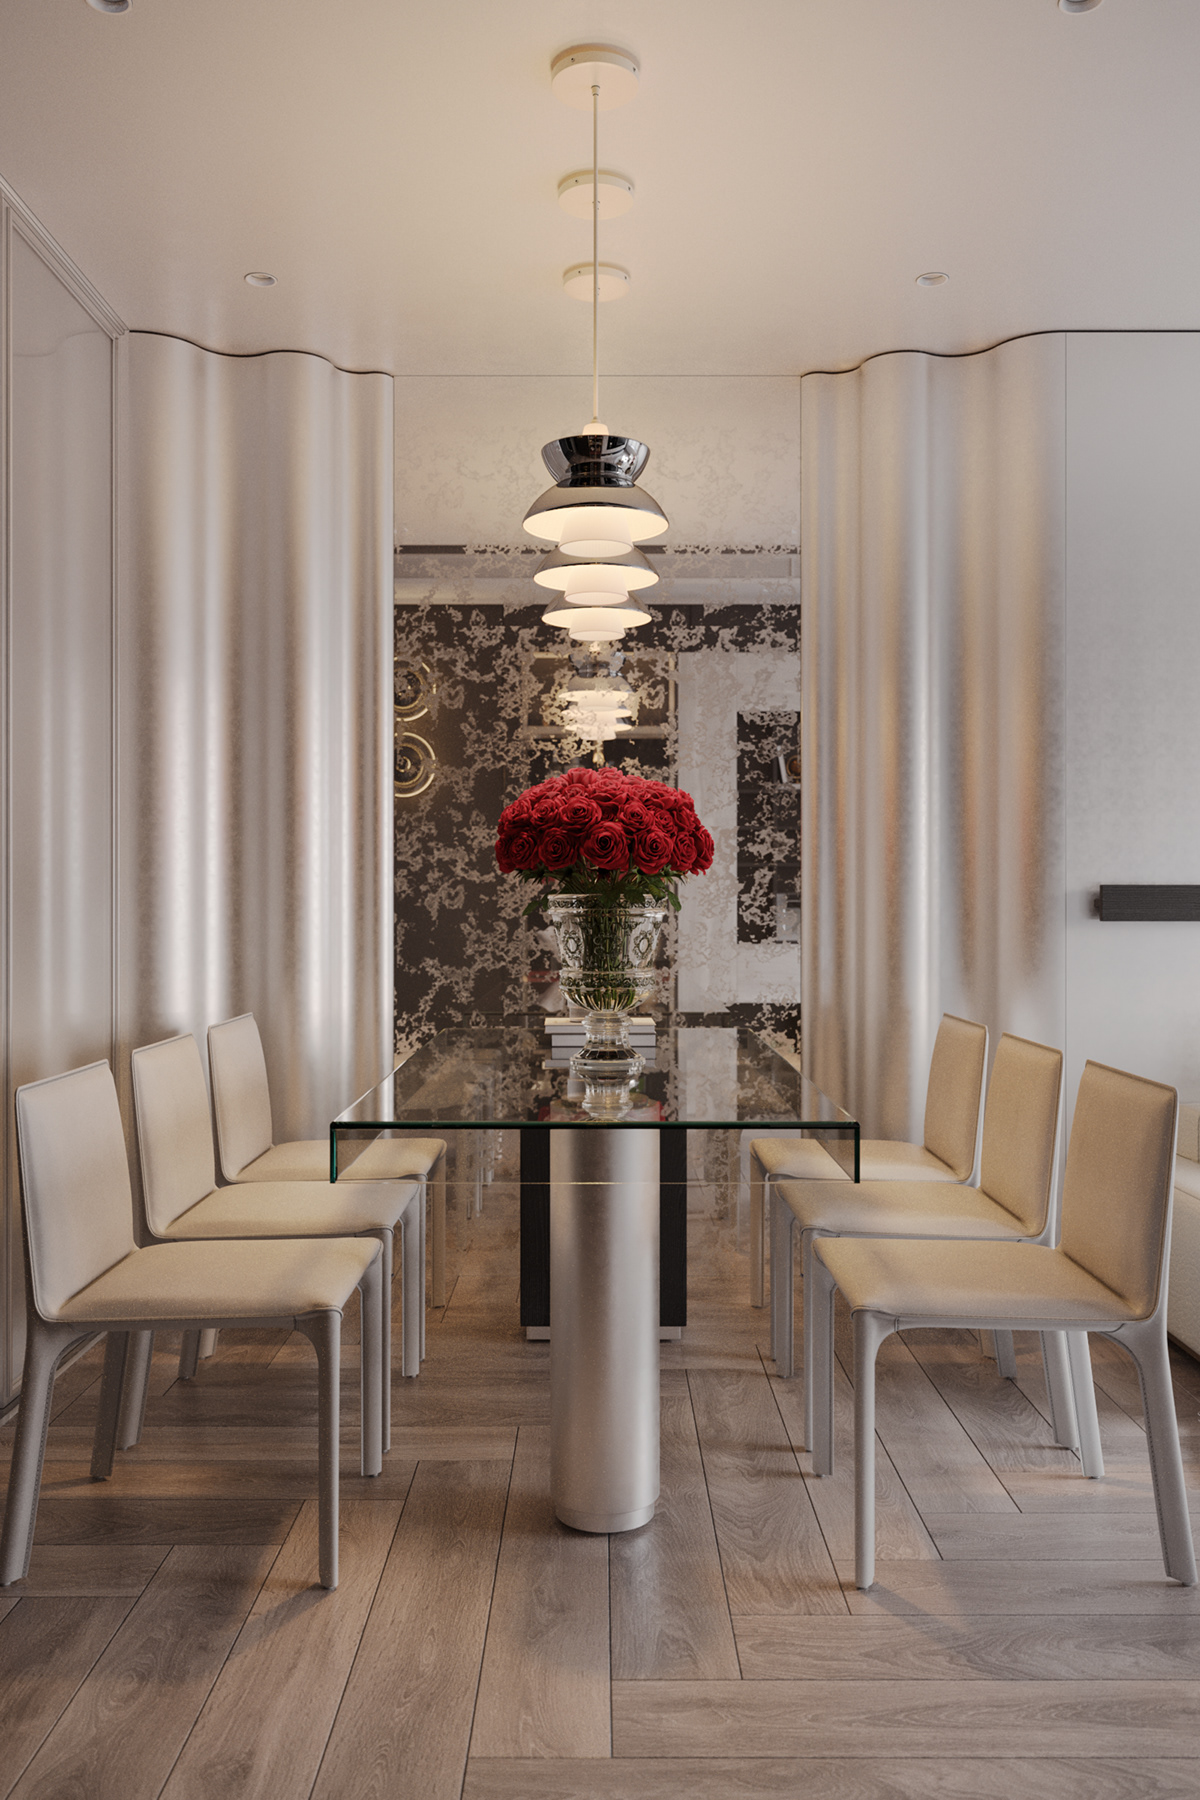 Interior design architect modern livingroom dinner